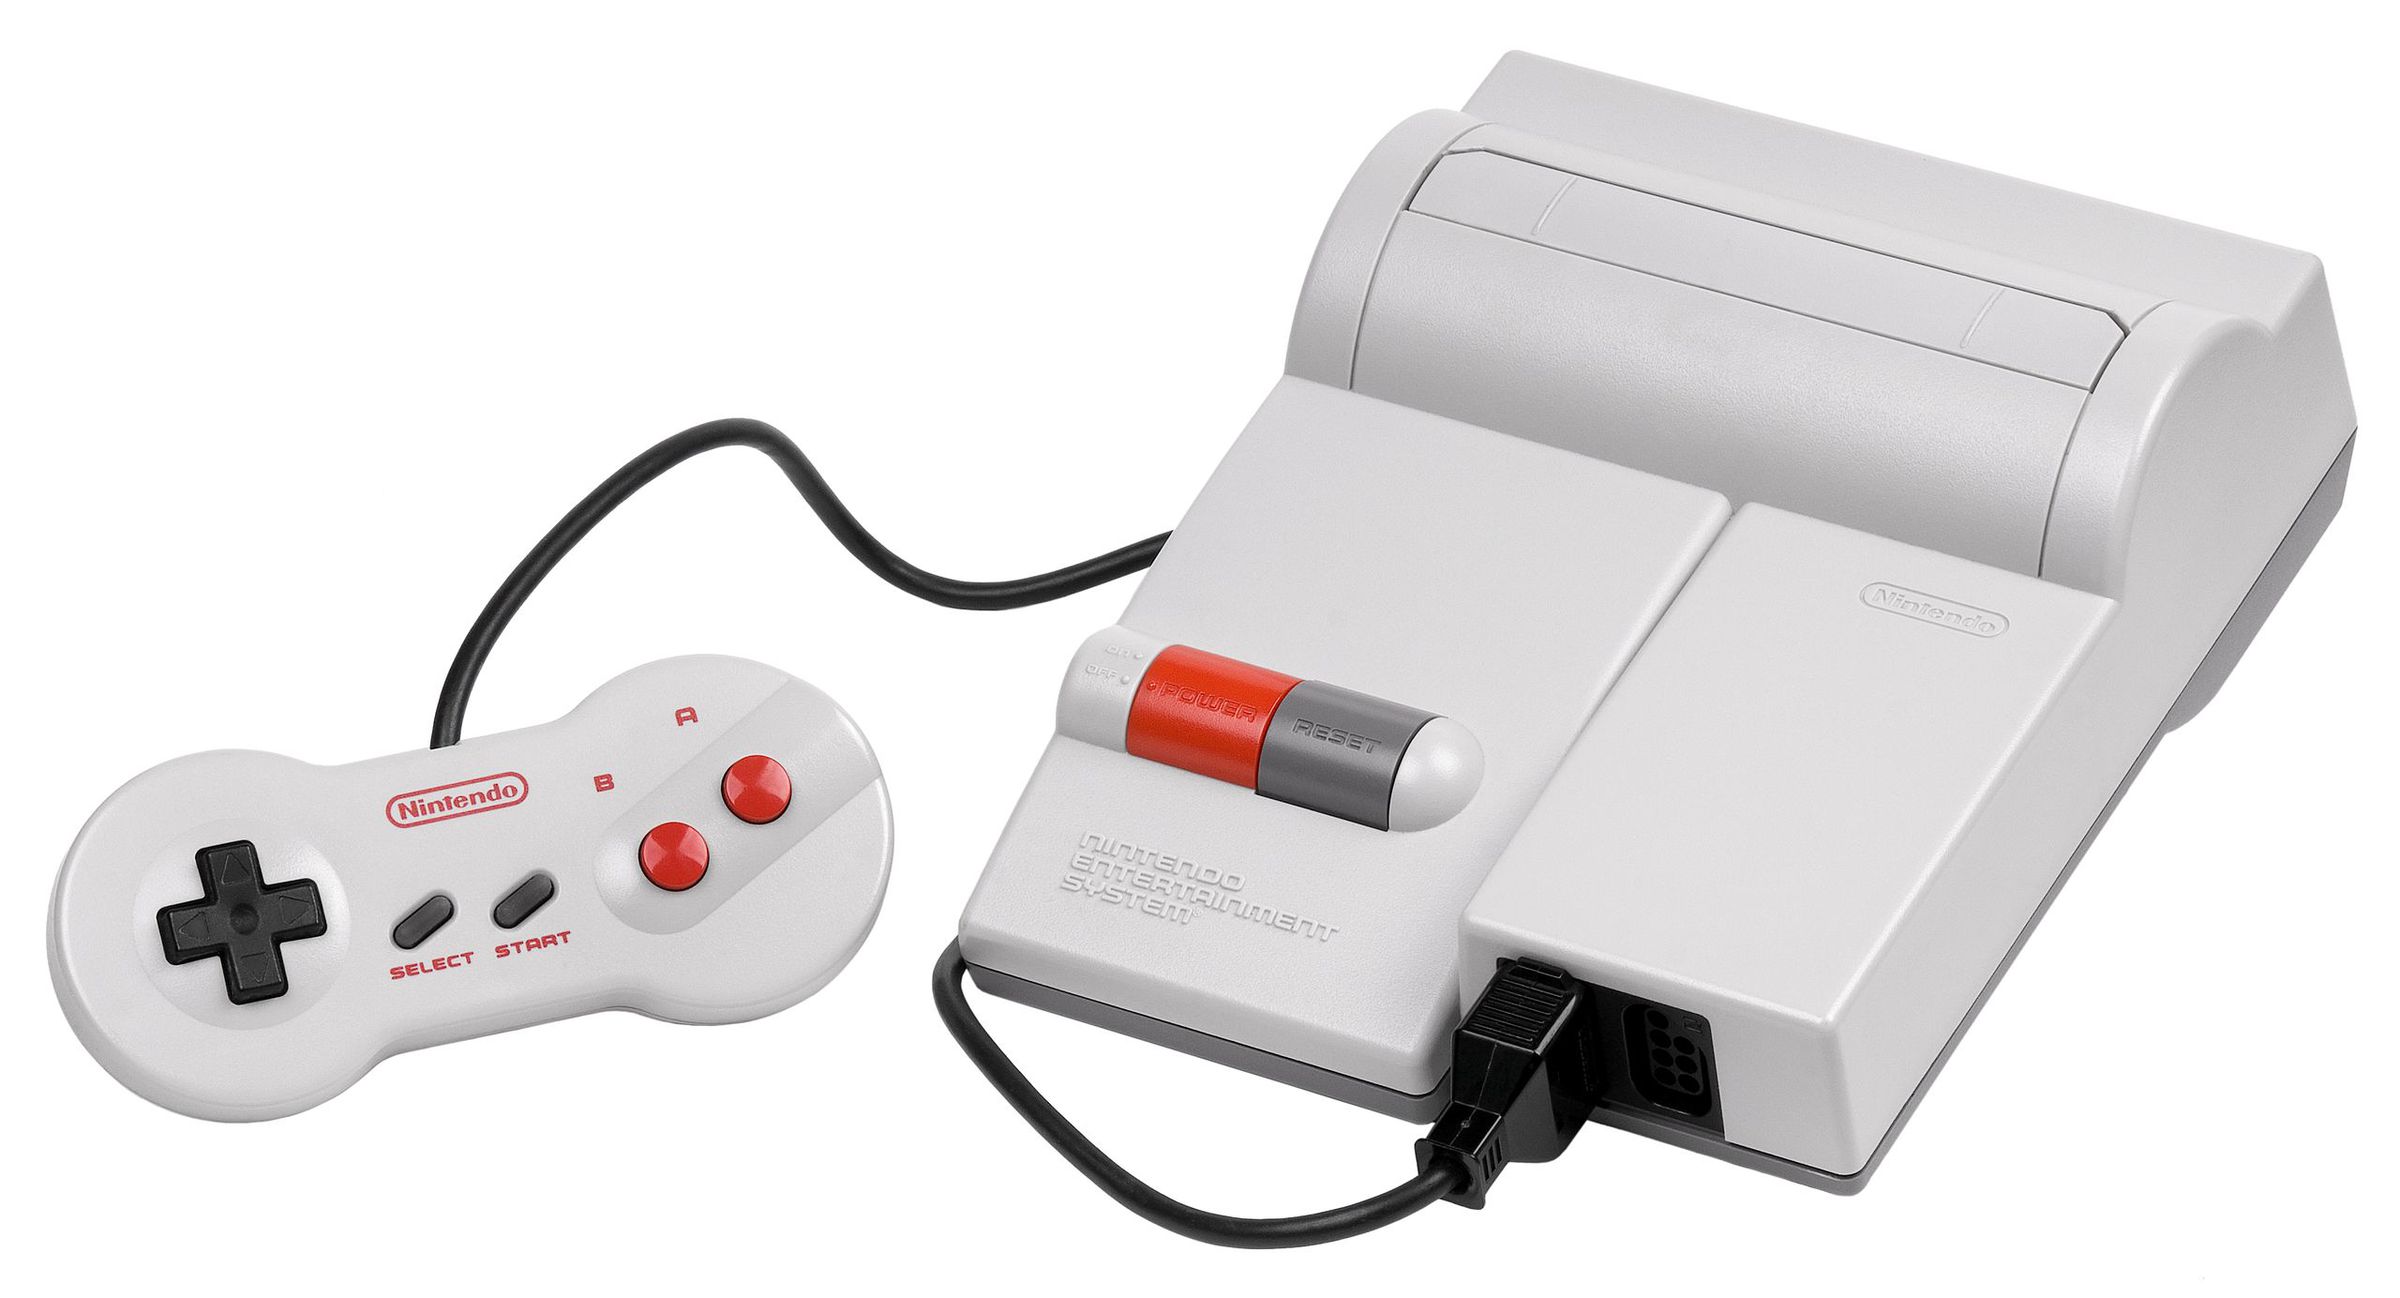 The NES-101.